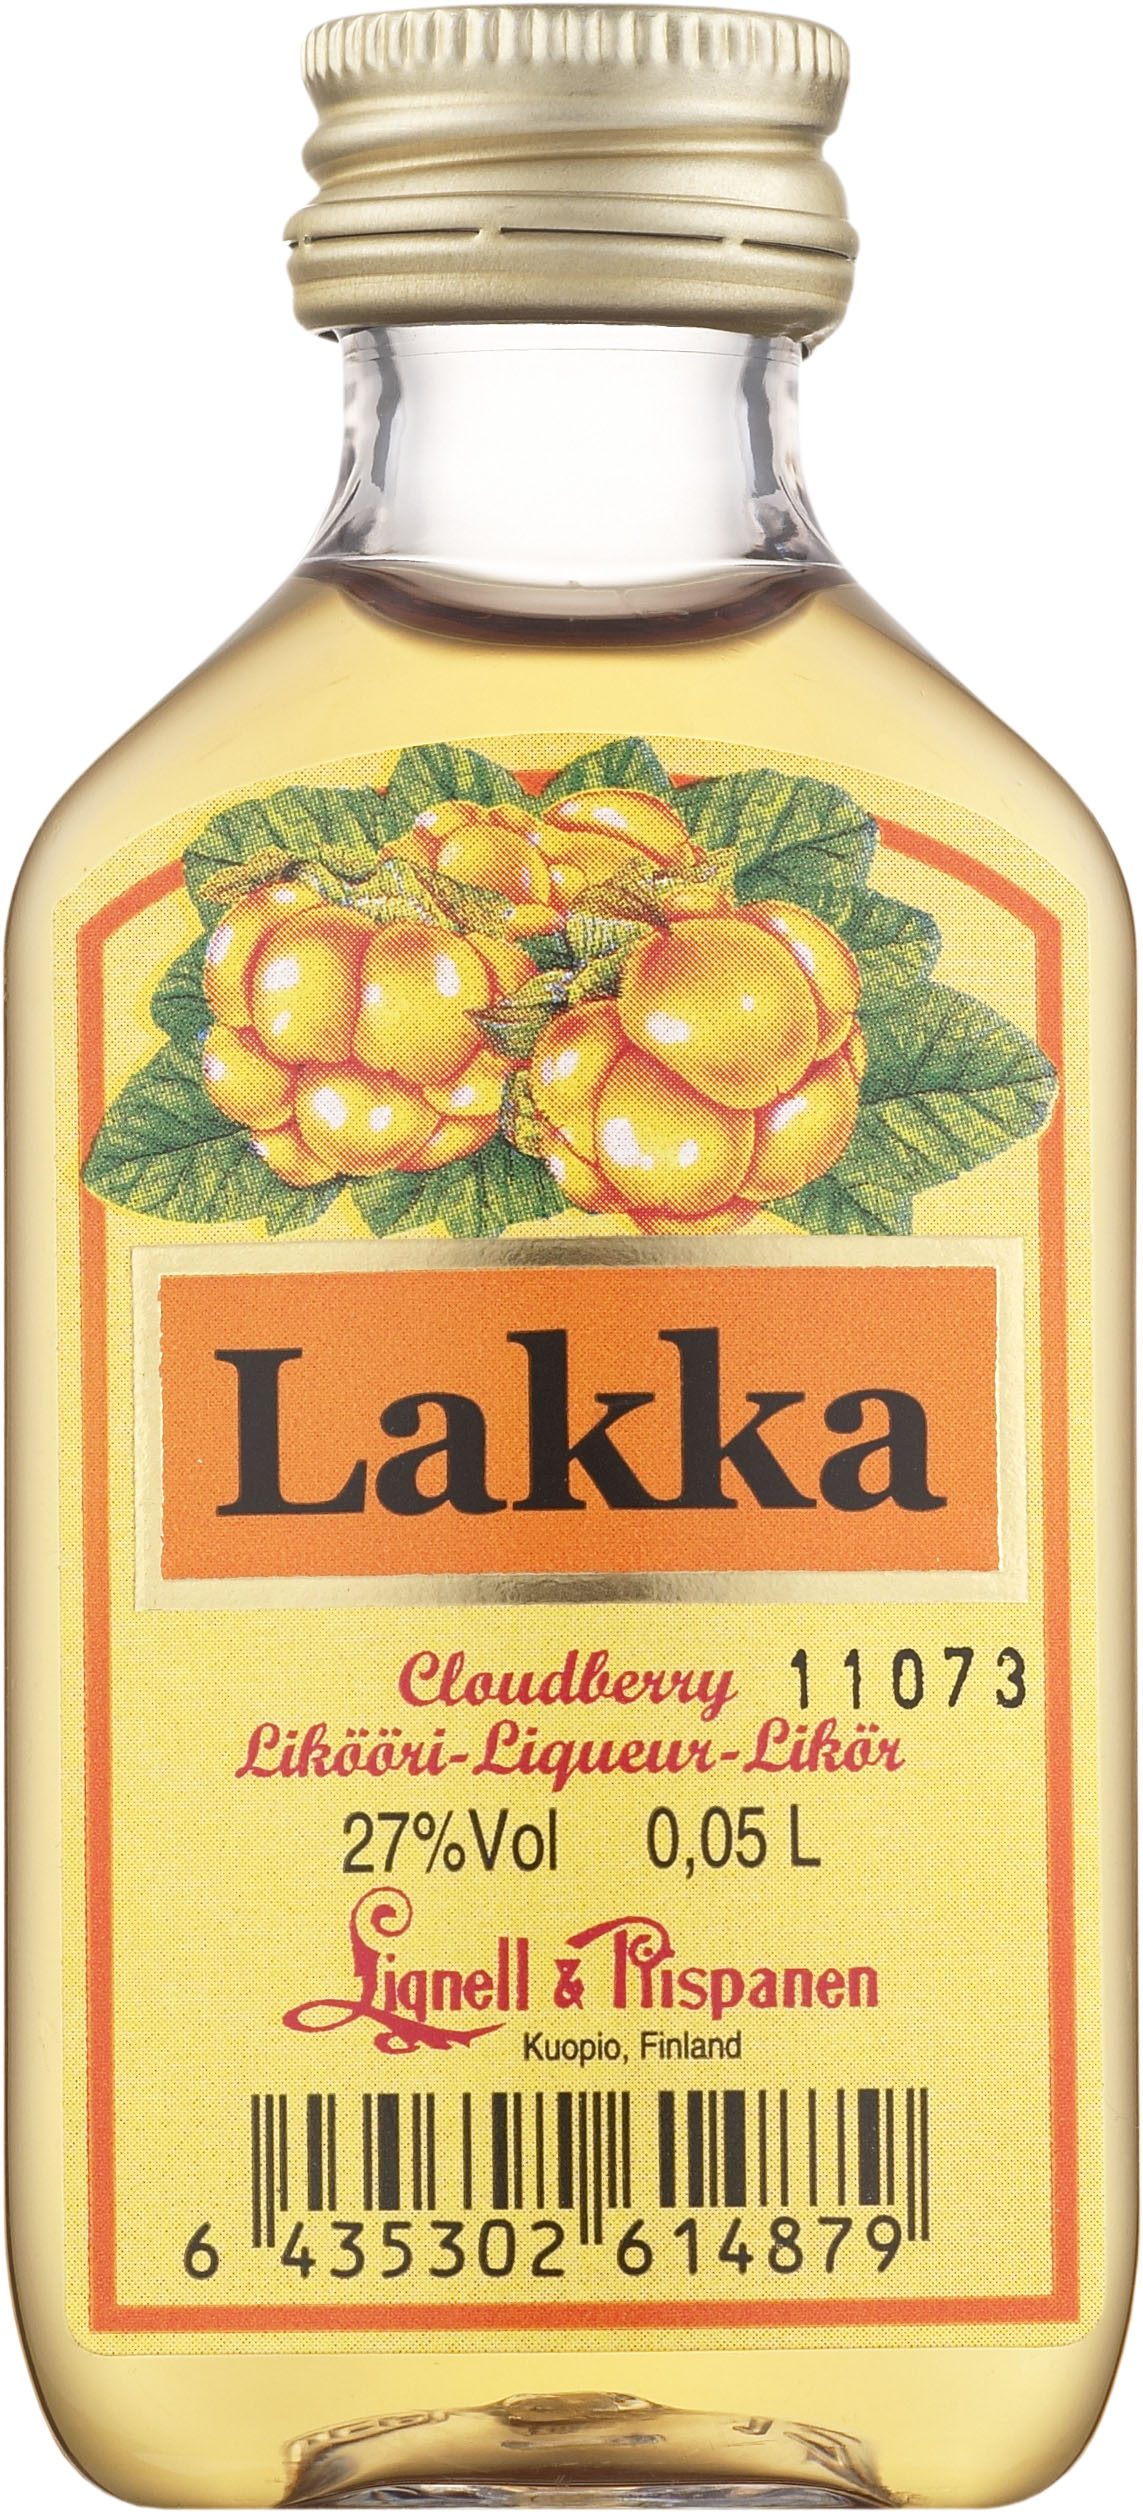 Lignell & Piispanen Lakka plastic bottle